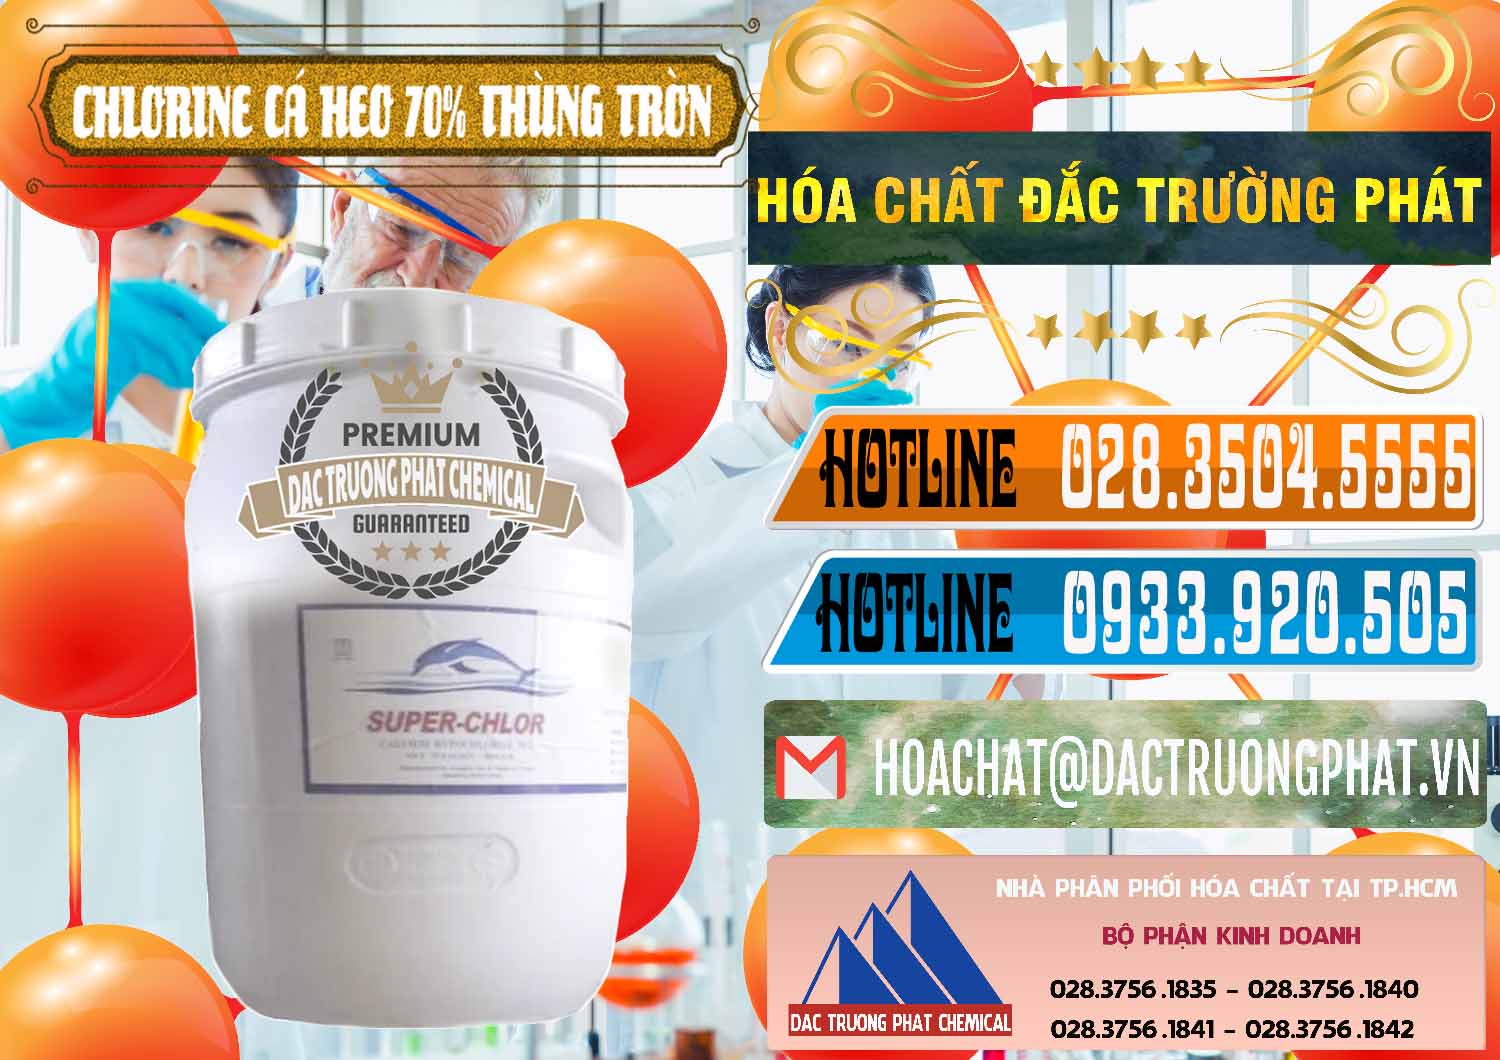 Cty chuyên bán _ cung cấp Clorin - Chlorine Cá Heo 70% Super Chlor Thùng Tròn Nắp Trắng Trung Quốc China - 0239 - Đơn vị chuyên nhập khẩu - cung cấp hóa chất tại TP.HCM - stmp.net